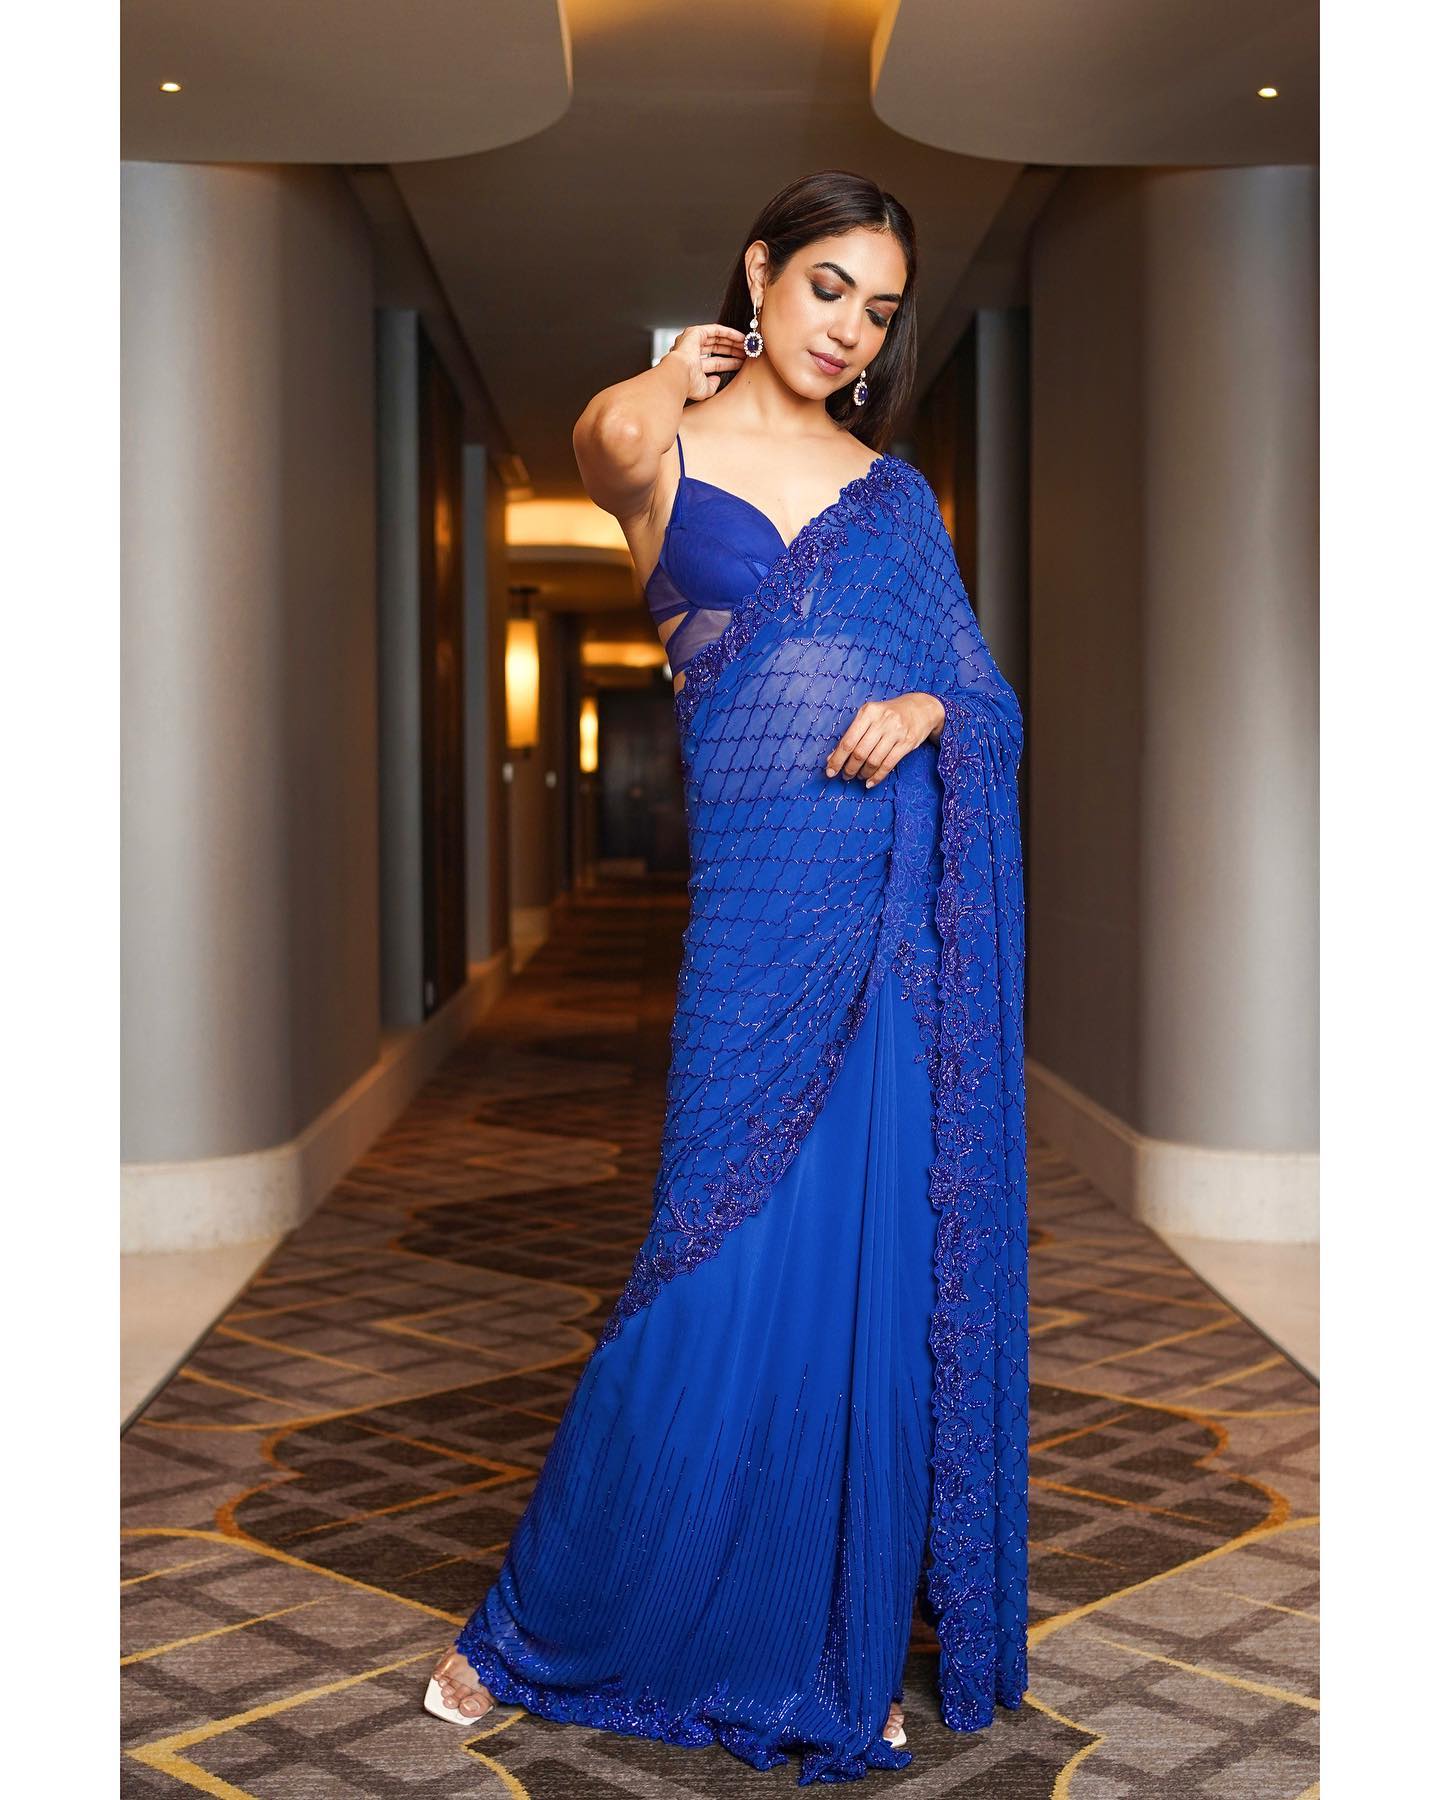 Actress Ritu Varma Hot And Sexy In Blue Backless Saree Photos 1